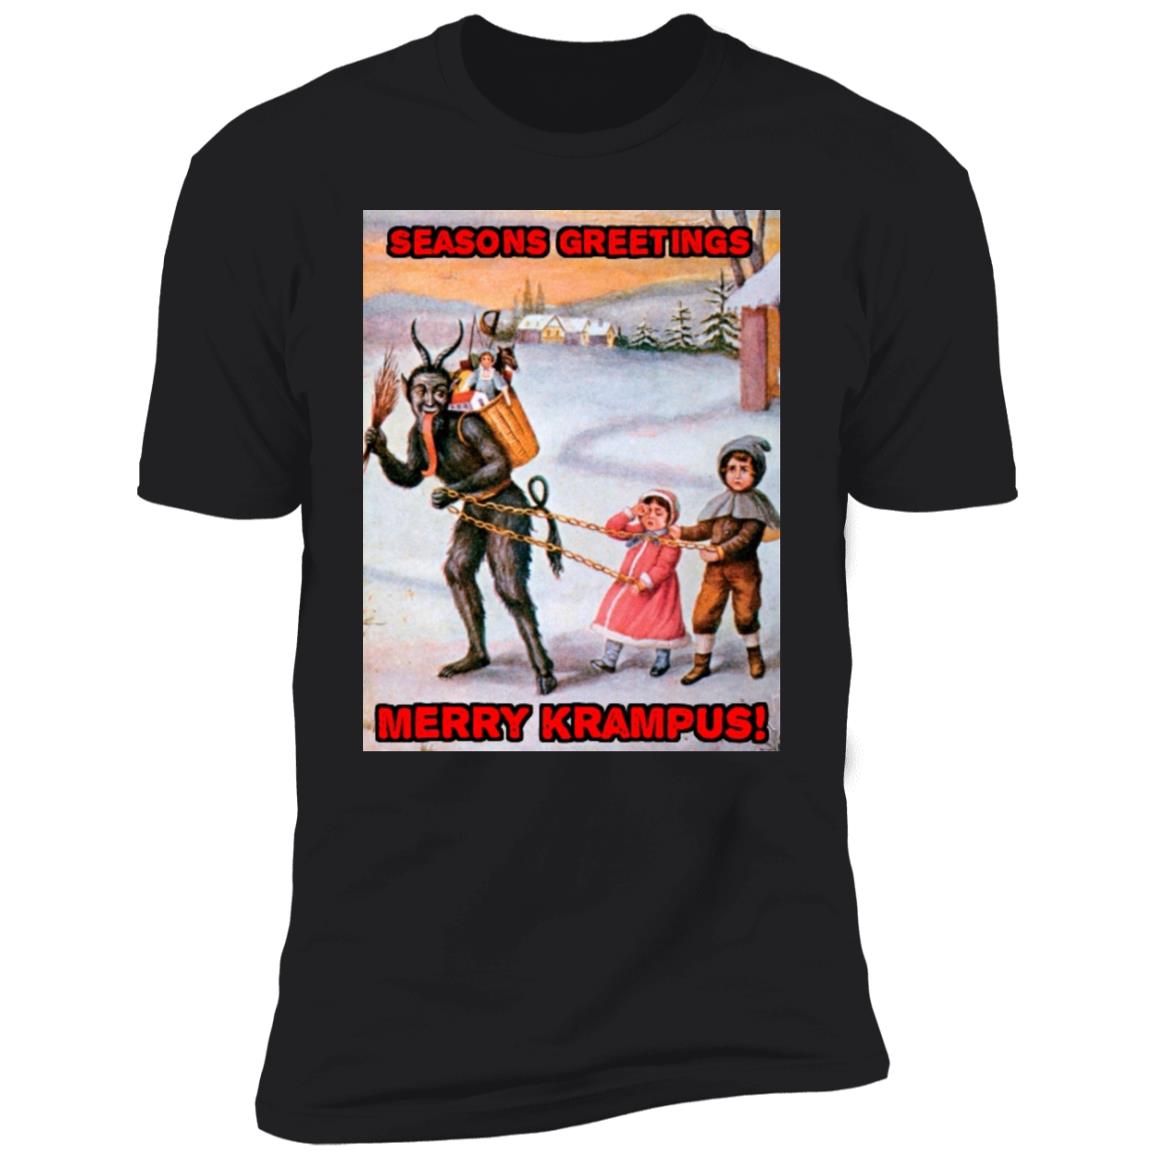 Merry Krampus Christmas Holiday Horror Tshirt